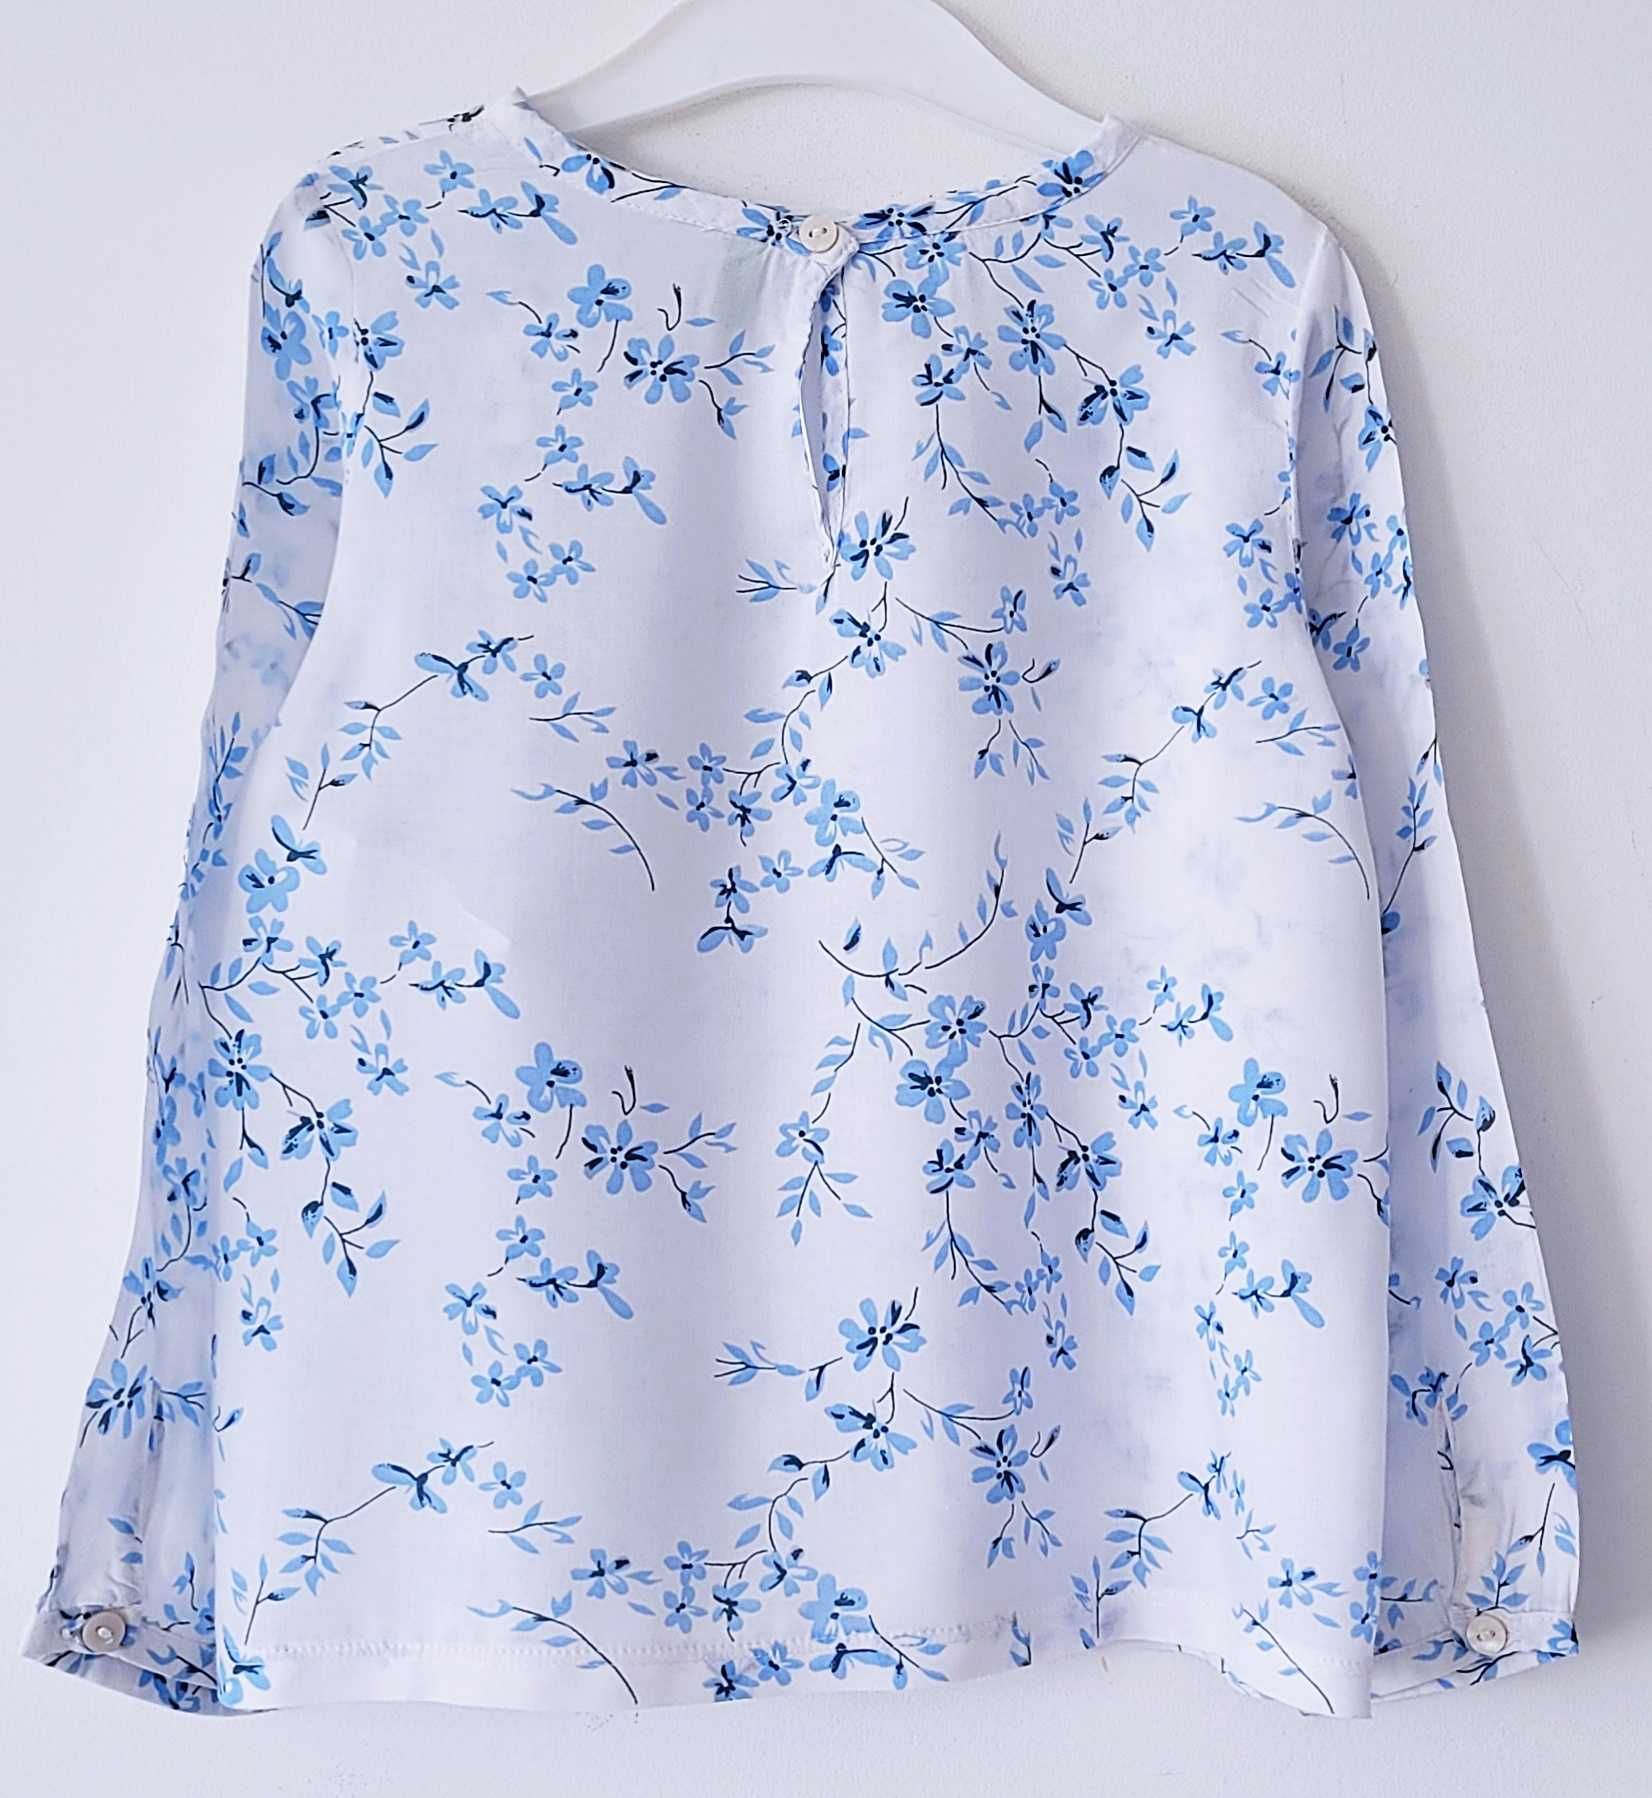 Biała bluzka w niebieskie kwiaty Benetton 110/116